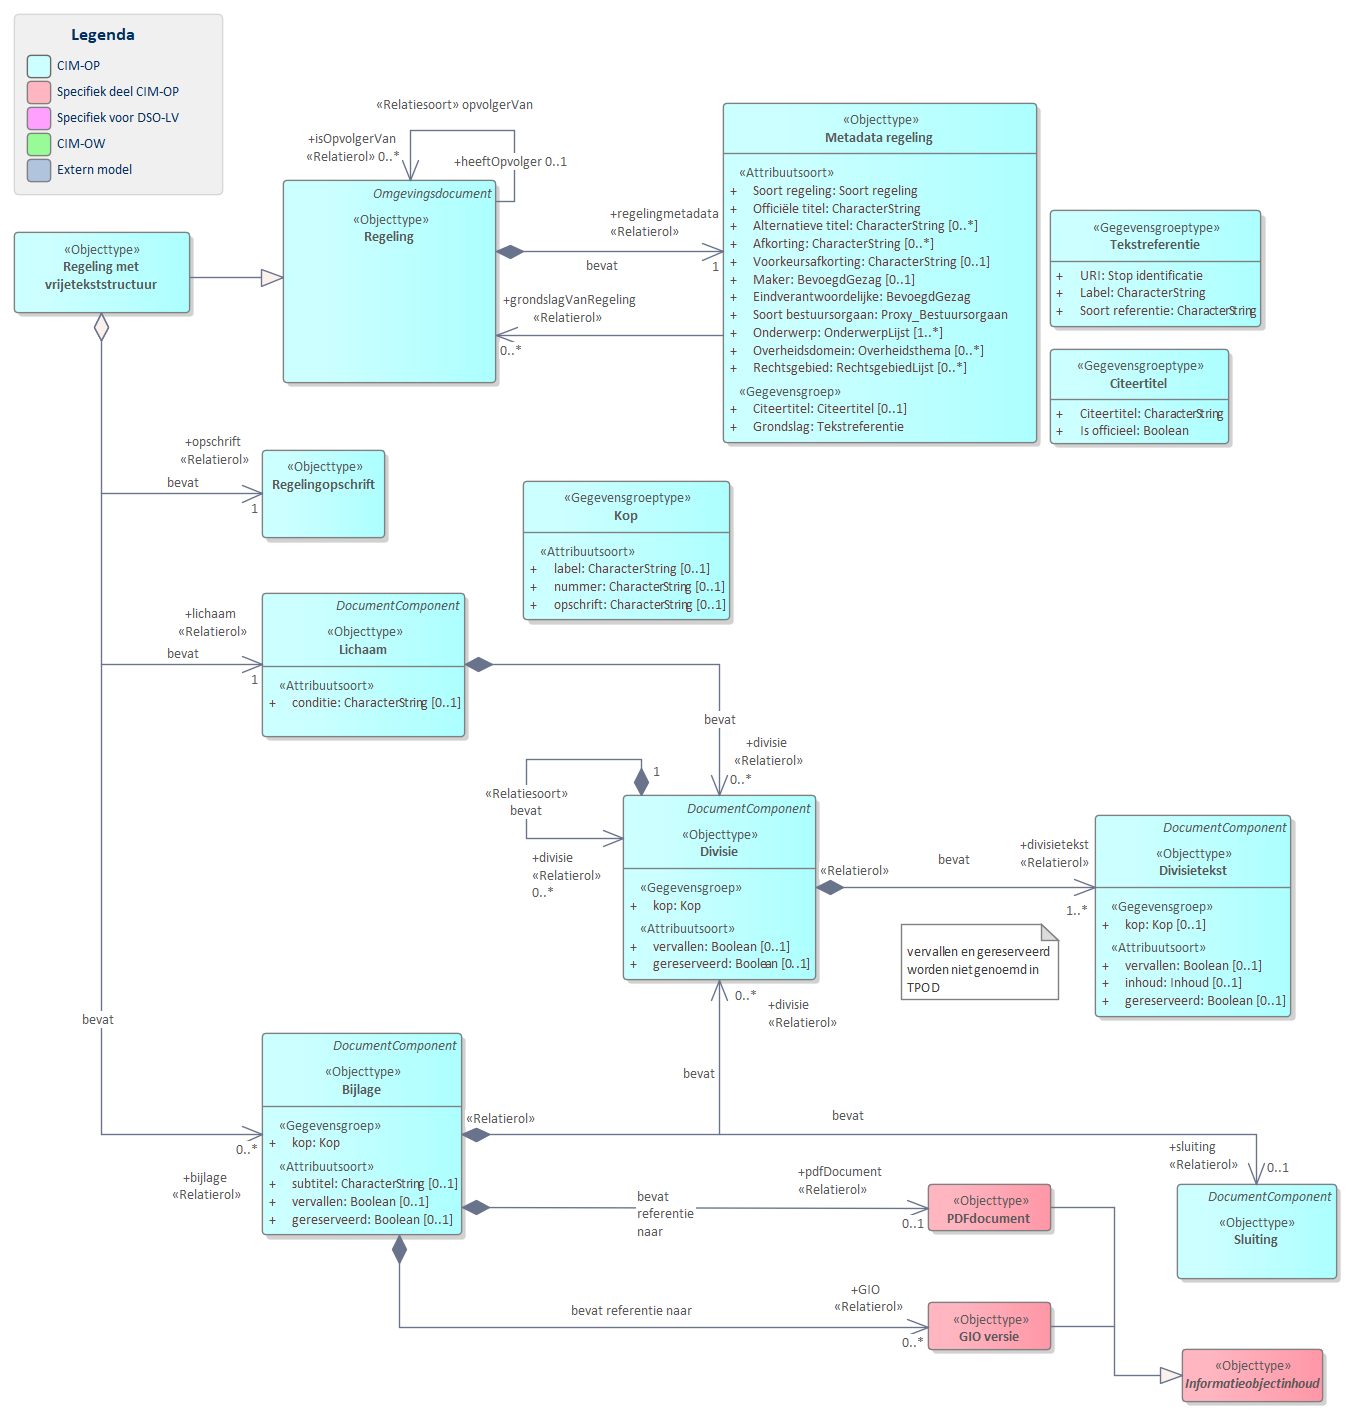 Diagram 
                        UML diagram voor `Regeling met vrijetekststructuur`.
                        Model voor regelingen met een vrijetekststructuur.
                        
                        Een `Regeling met vrijetekststructuur` bevat de volgende basisonderdelen:
                        
                        
                           `Metadata regeling' bevat de gegevens over een regeling zoals titel en maker.
                           `Opschrift`
                           `Lichaam`
                           `Divisie`
                           `DivisieTekst`
                           `Bijlage`
                        
                        
                        
                        De meeste van delen van de basisonderdelen zijn weer verder opgedeeld in onderdelen.
                        
                        
                           
                              
                                 Referentie naar STOP
                              
                           
                        
                     